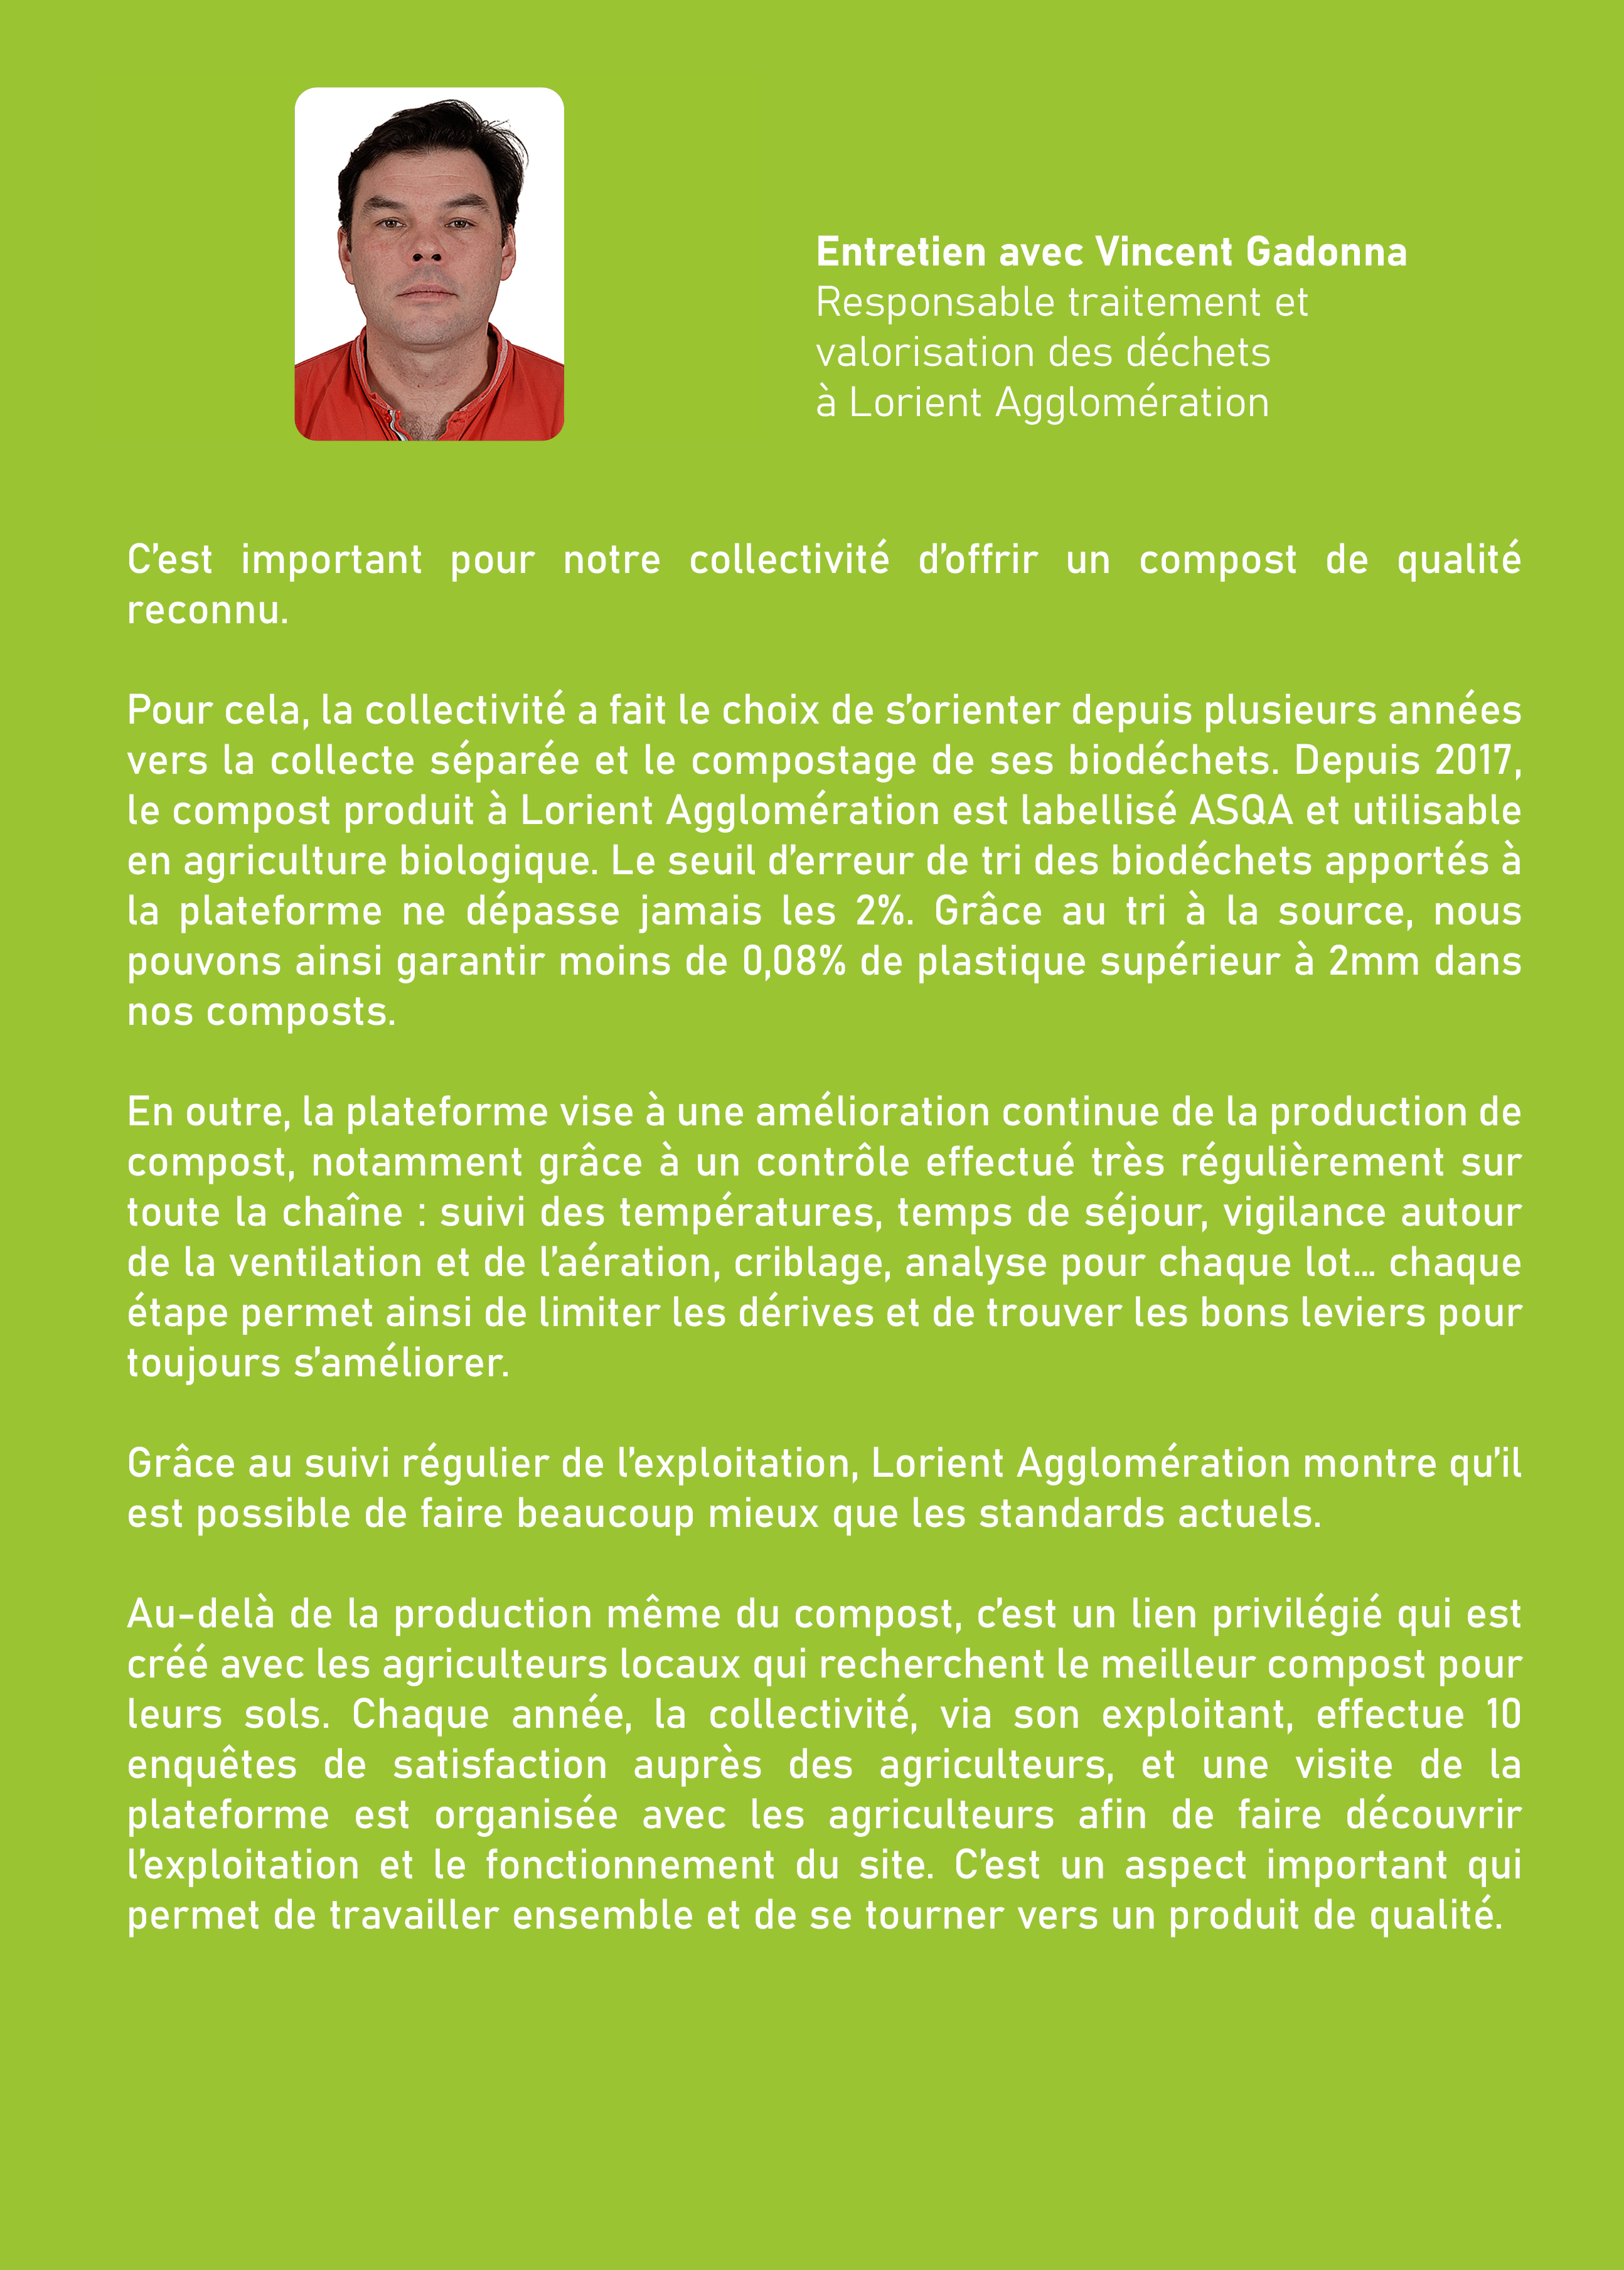 Entretien avec Vincent Gadonna, Responsable traitement et valorisation des déchets, Lorient Agglomération